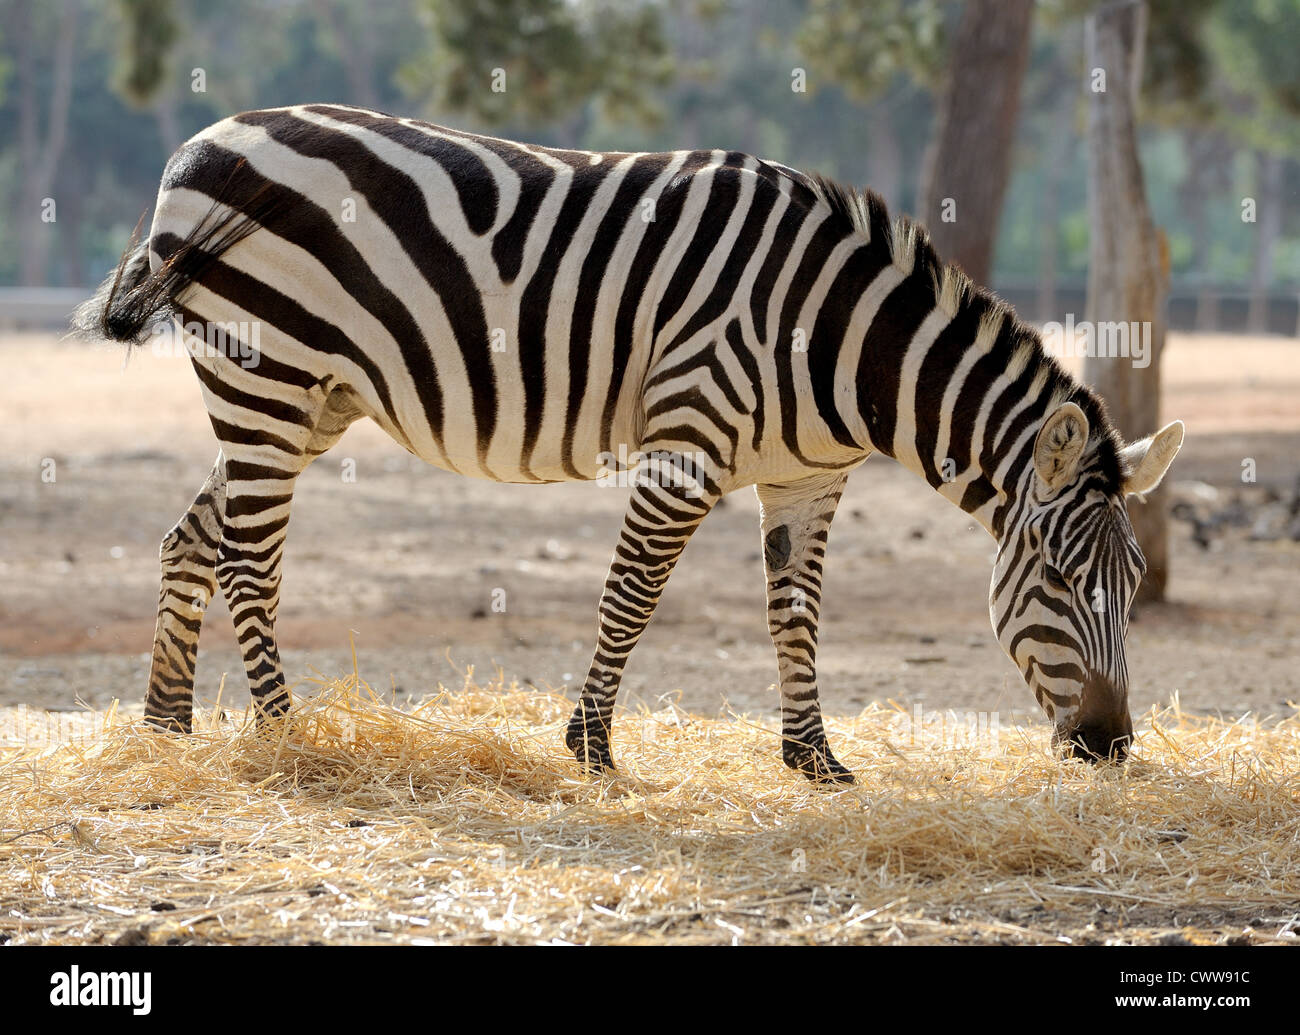 Ein Streifen schwarz, ein Streifen von weiß - Zebra im Zoo. Stockfoto